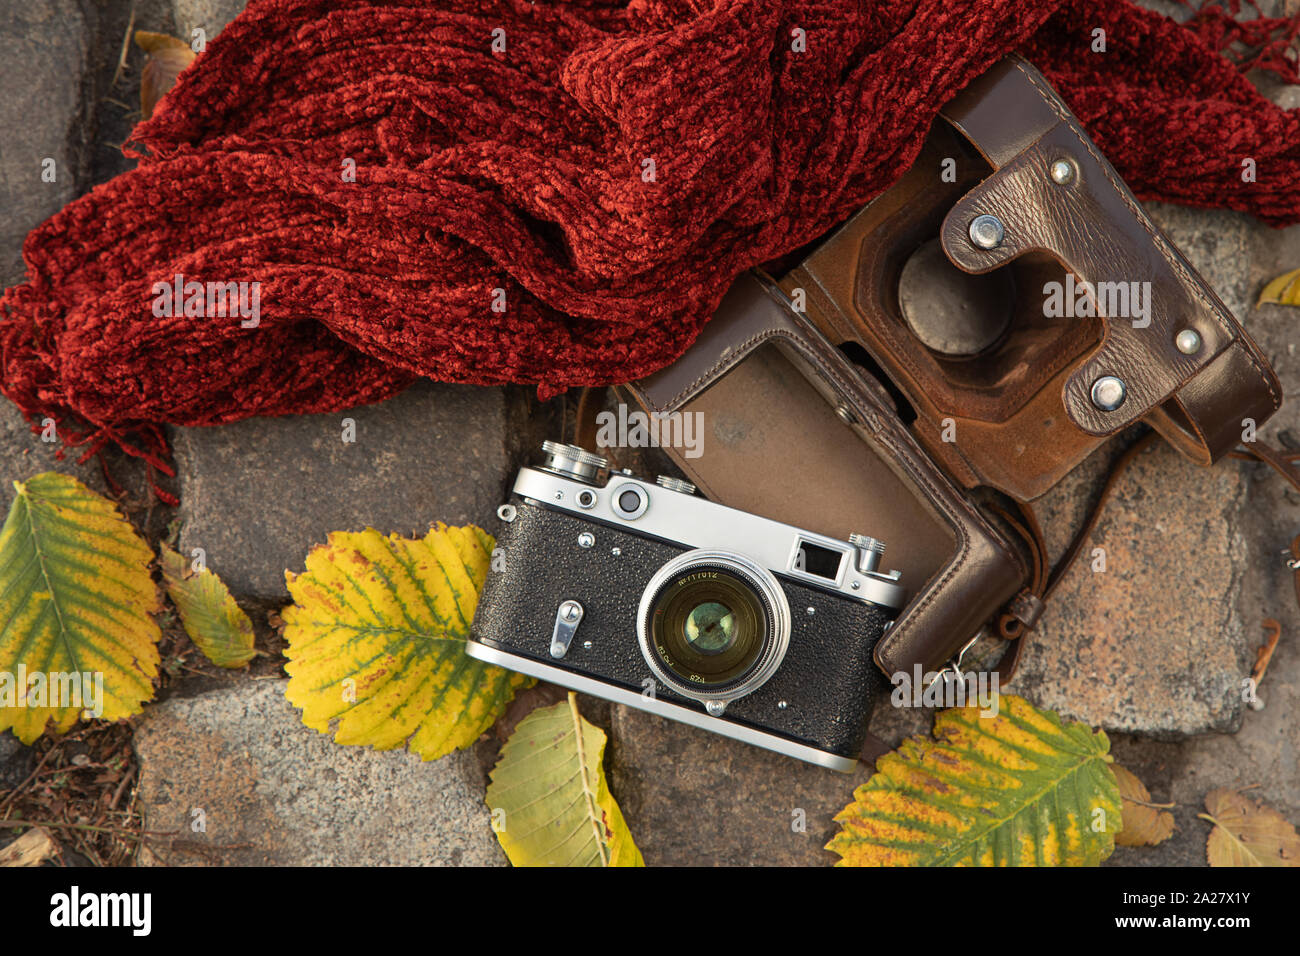 Humeur d'automne still life : télémètre vintage camera, 7290, en cuir marron, foulard rouge et les feuilles portant sur la chaussée Banque D'Images